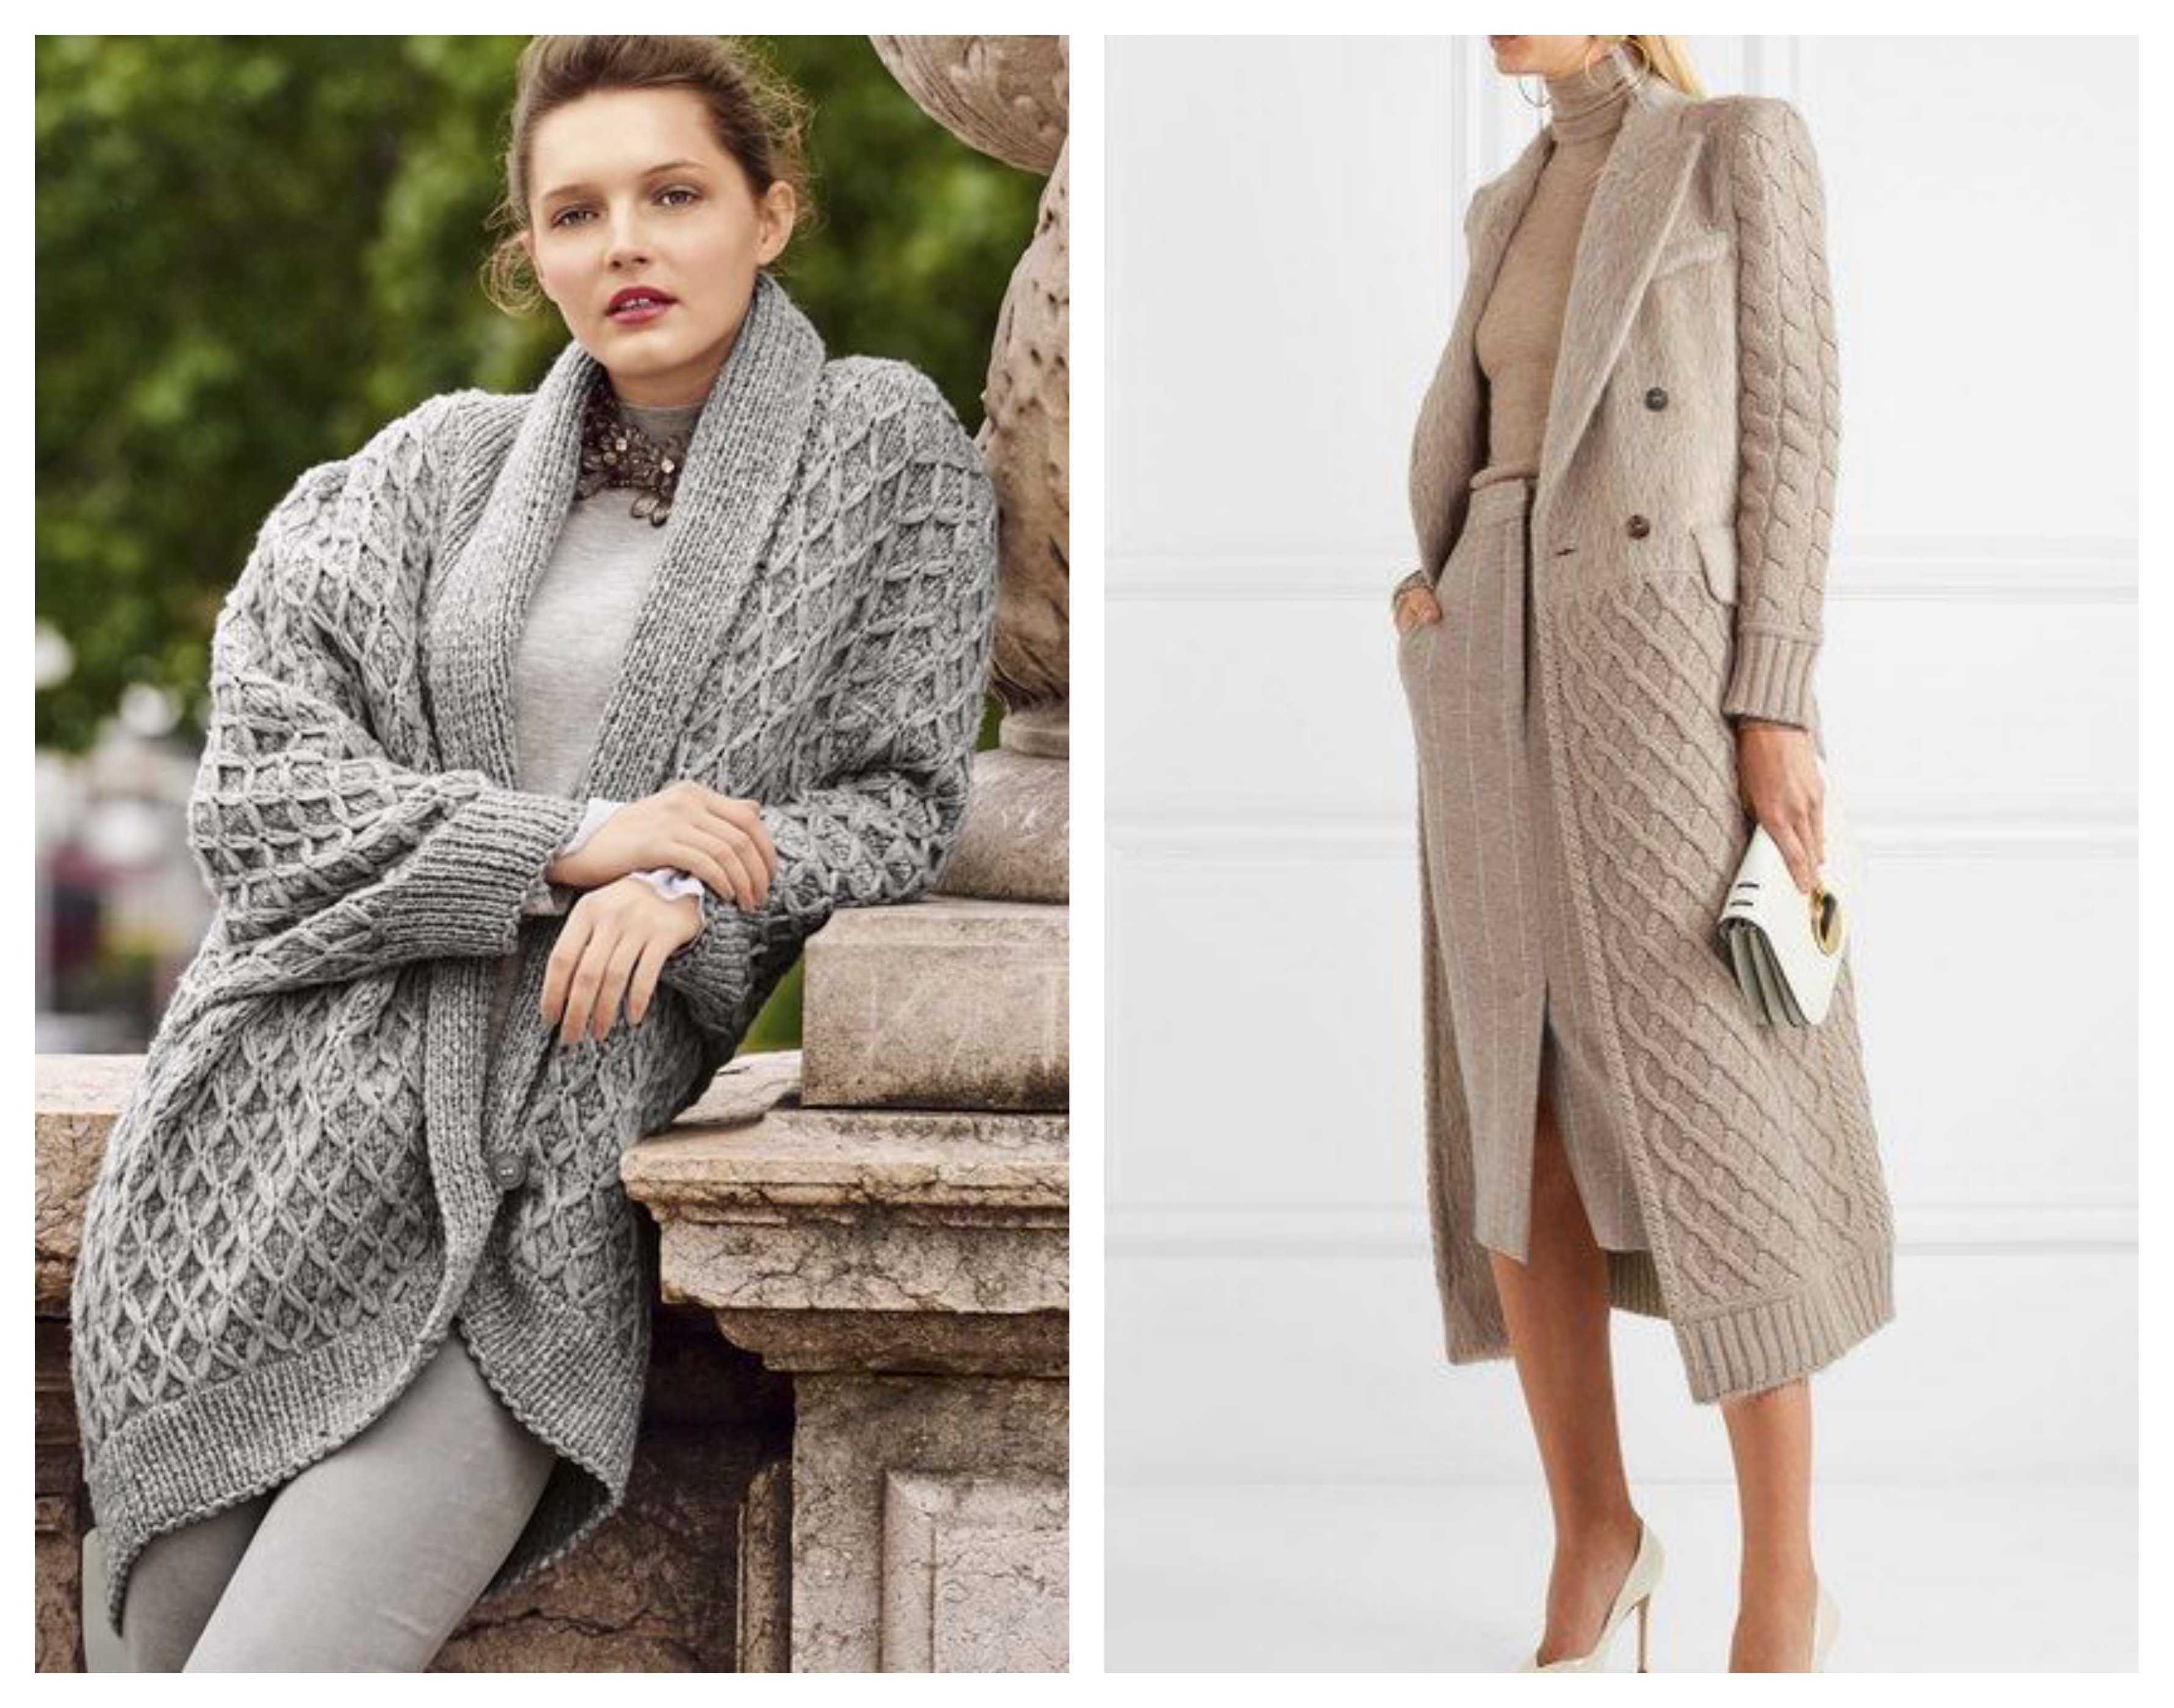 Пальто спицами для женщин и девушек: модели, узоры, схемы, описание, фото. как связать спицами красивое, модное женское пальто реглан, с капюшоном, оверсайз, ажурное, короткое, длинное своими руками?